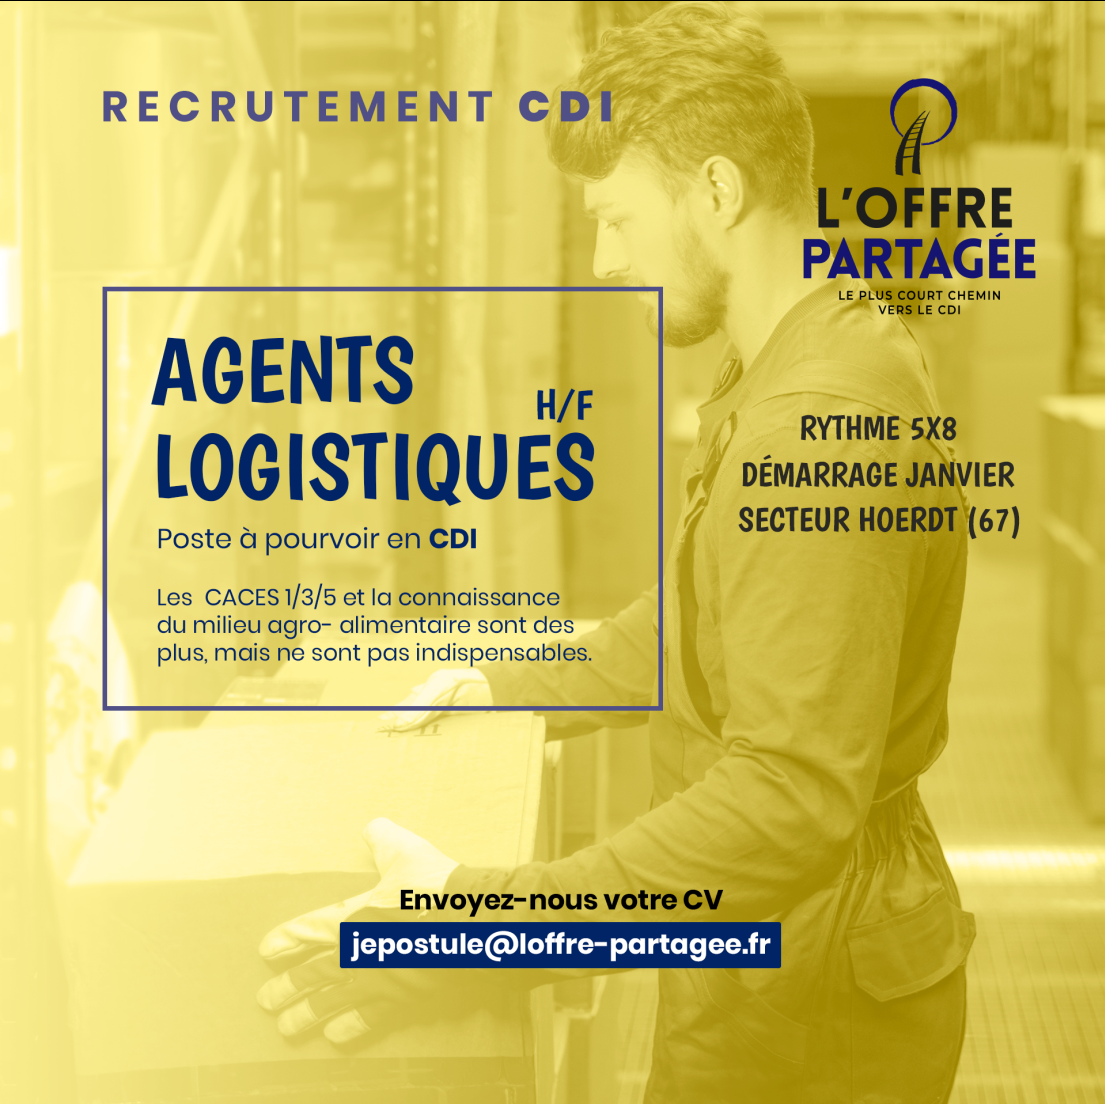 L'OFFRE PARTAGEE recrute AGENTS LOGISTIQUES H/F